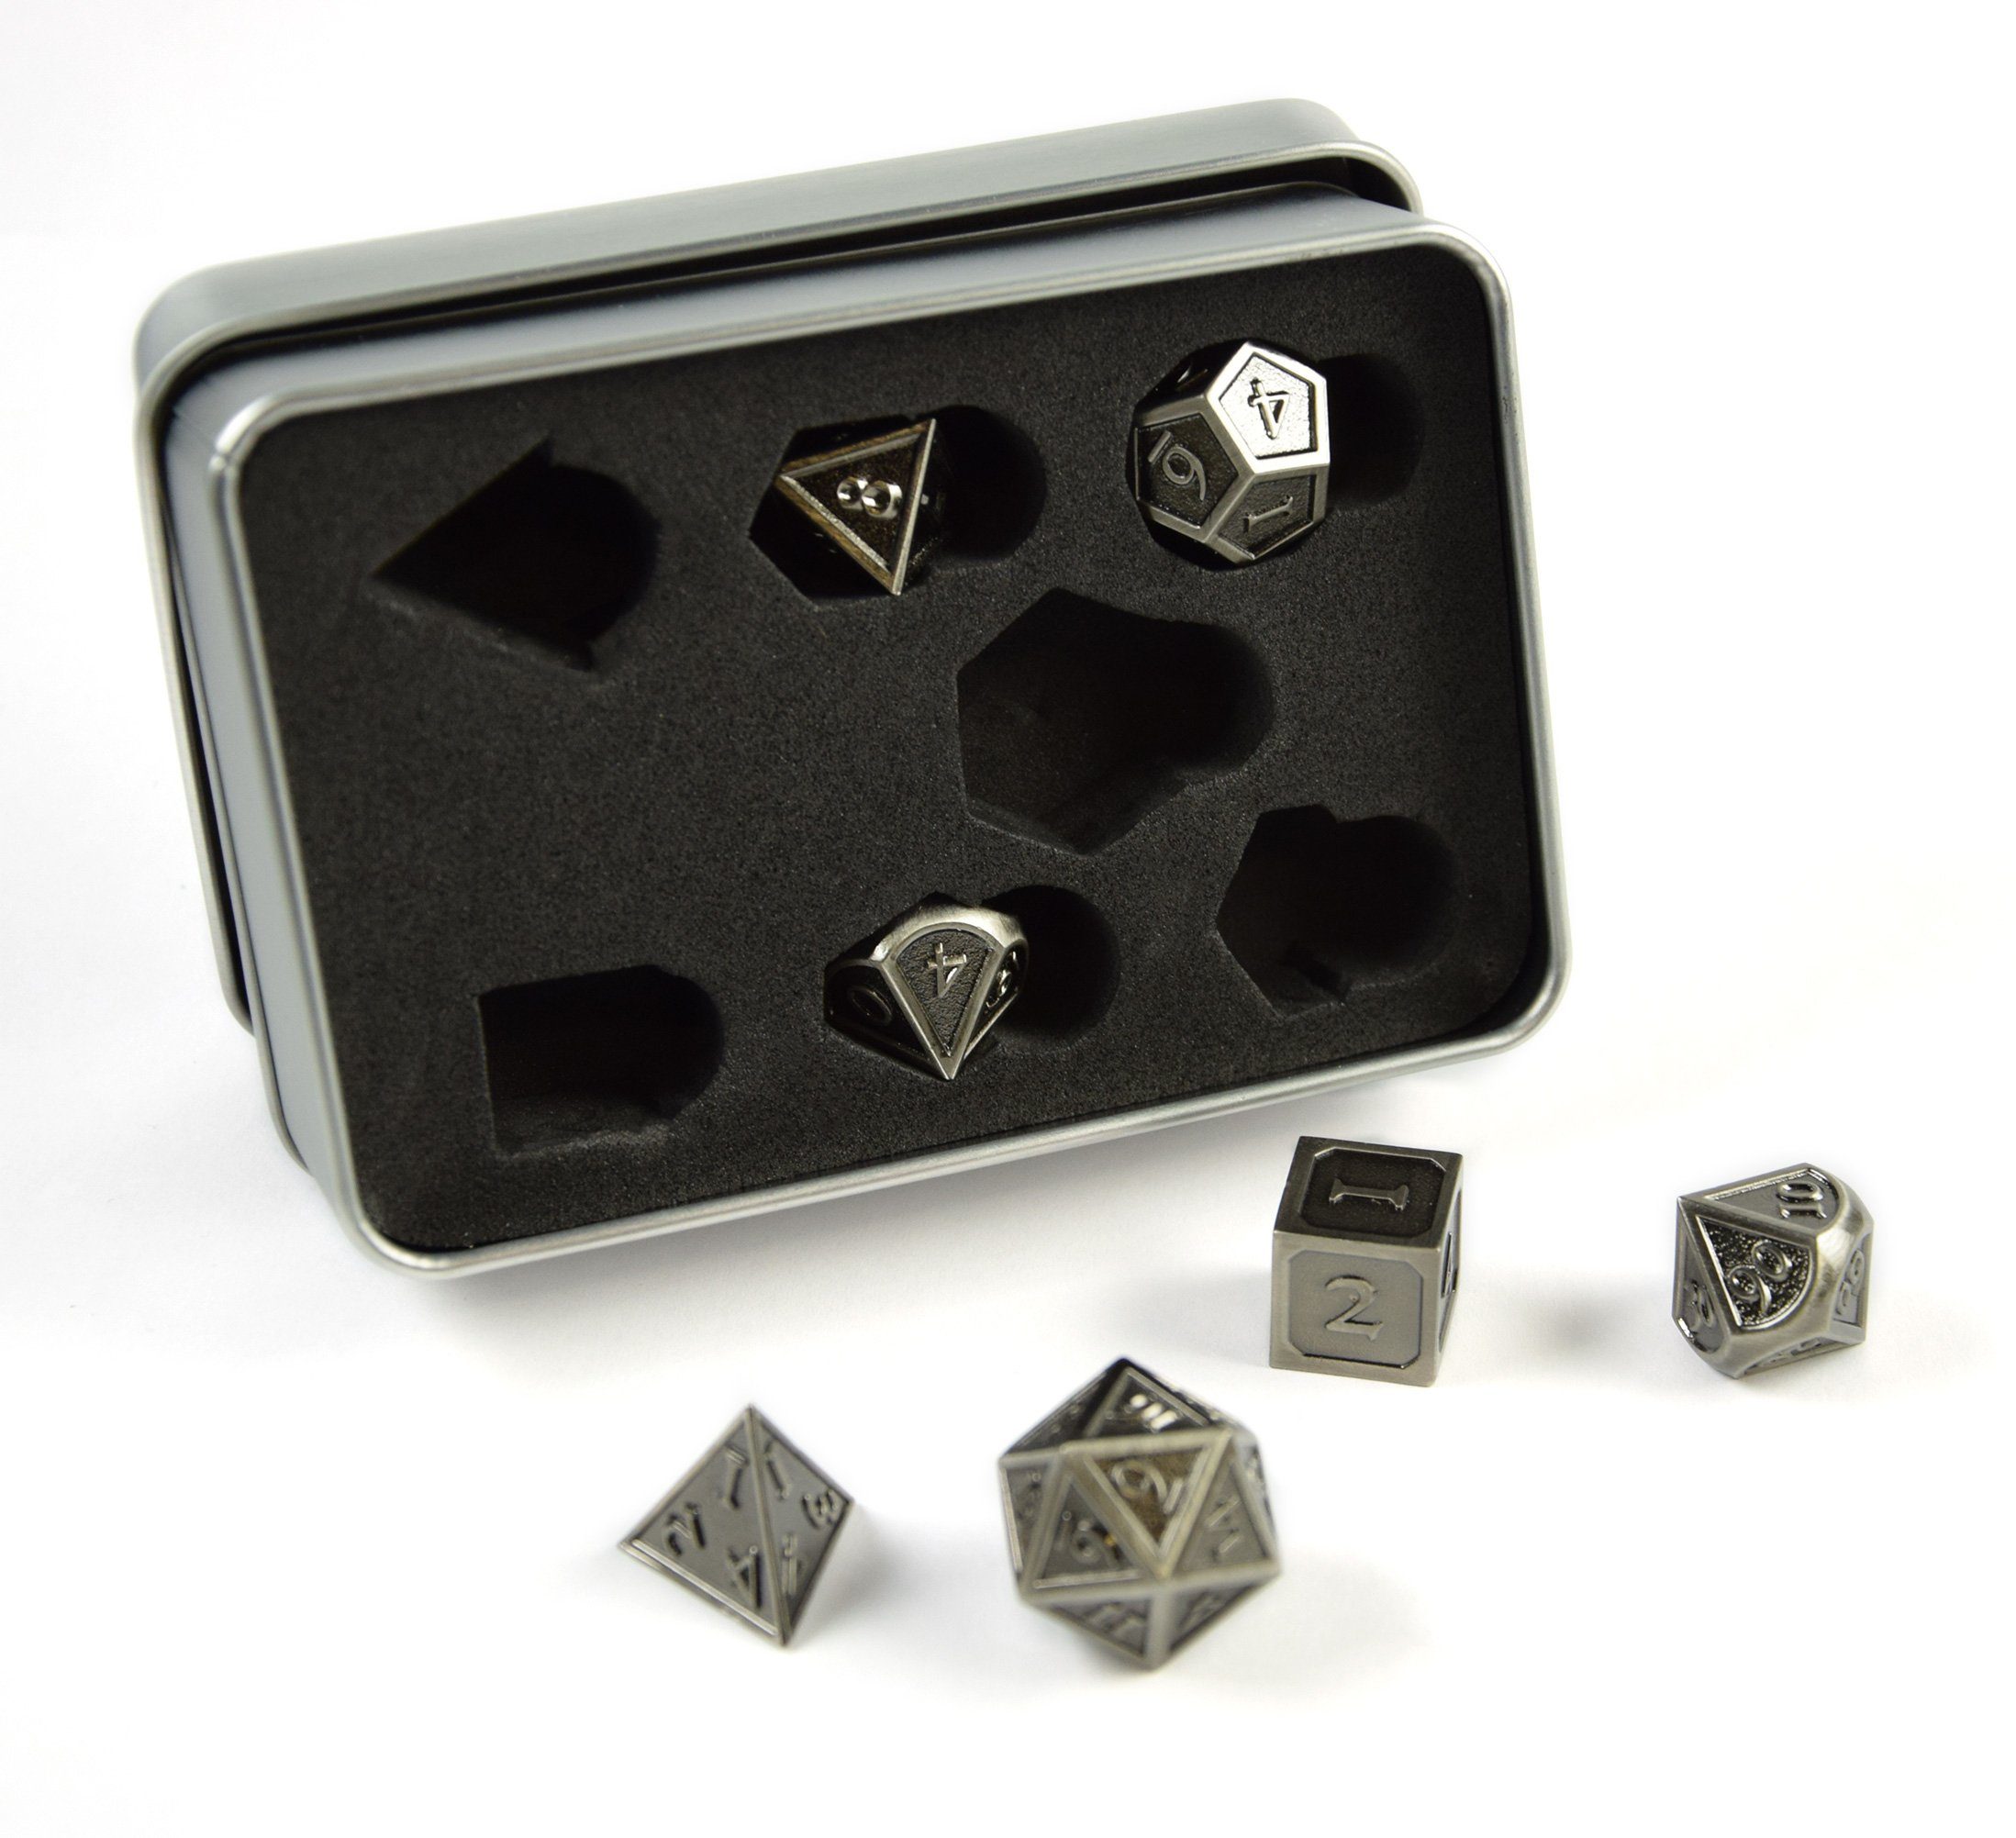 SHIBBY Spielesammlung, 7 polyedrische Metall-DND-Würfel in Steampunk Optik, inkl. Aufbewahrungsbox Silber